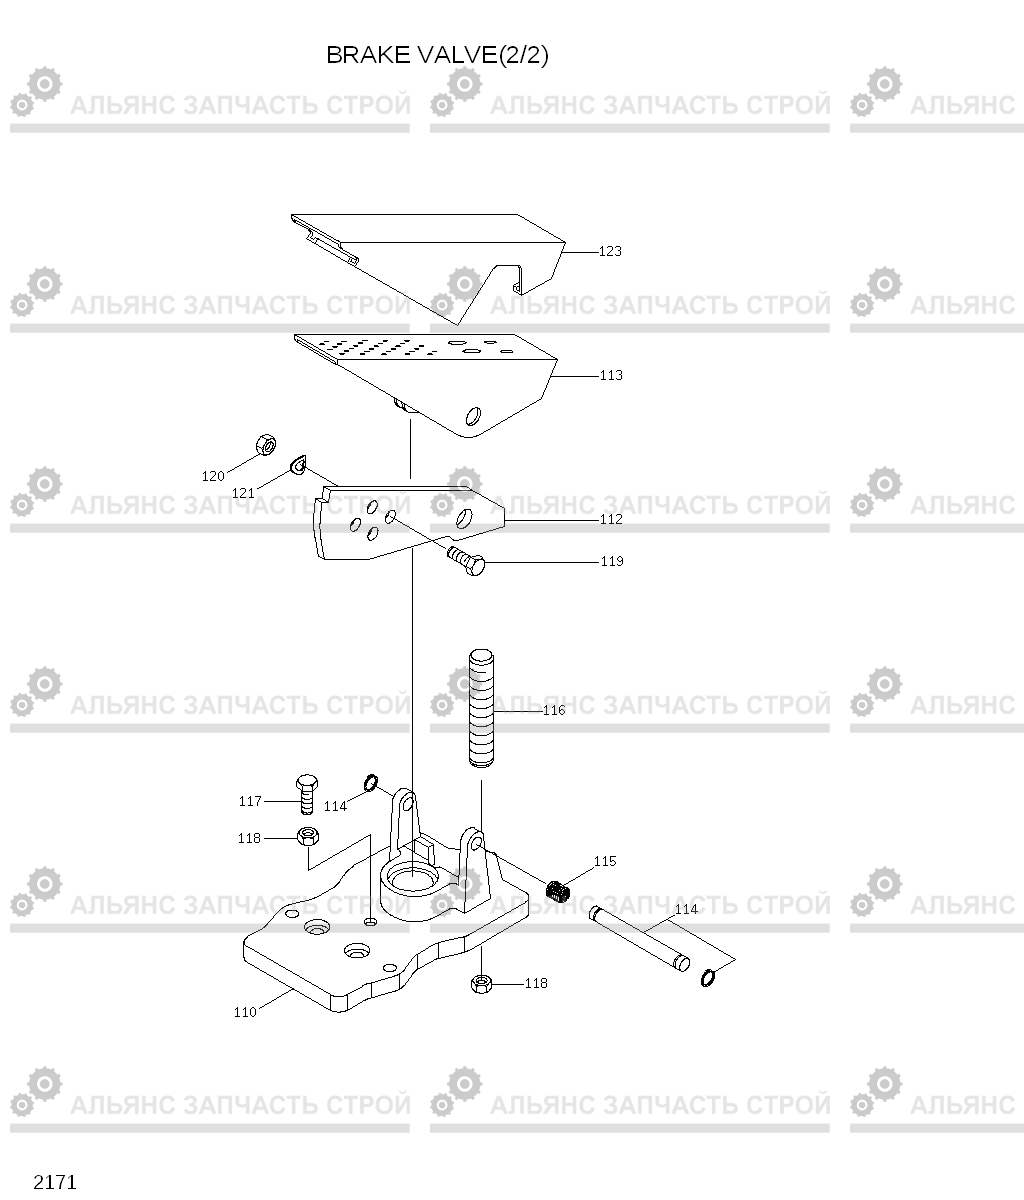 2171 BRAKE VALVE(2/2) HL720-3(#0053-), Hyundai